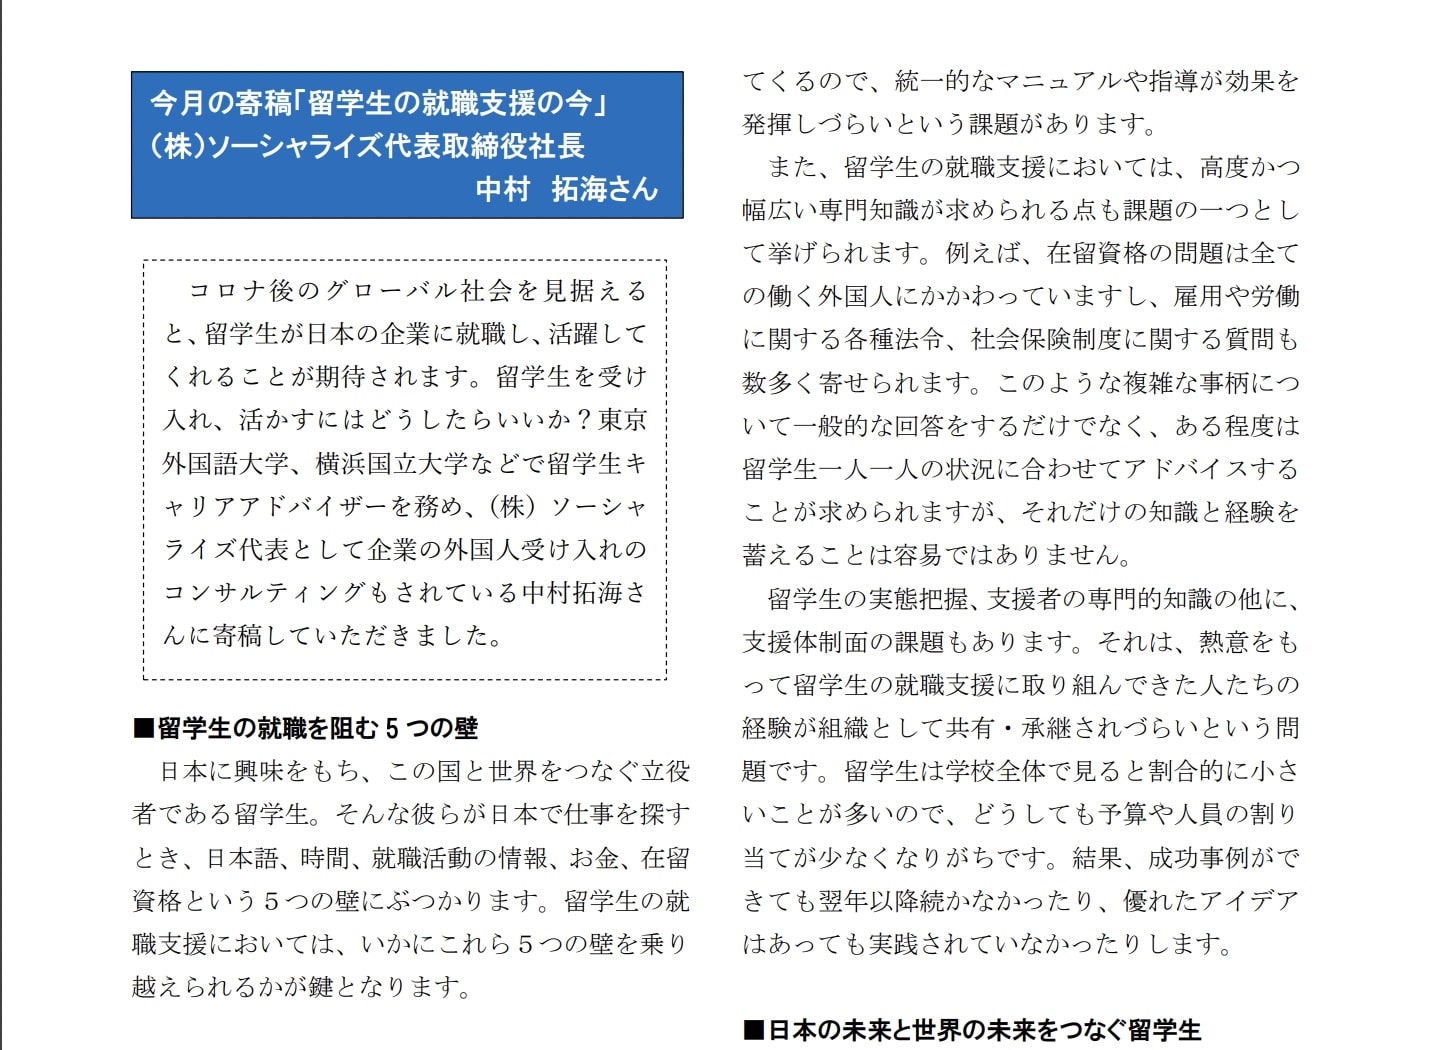 JP-Miraiアシストのニュースレターに寄稿